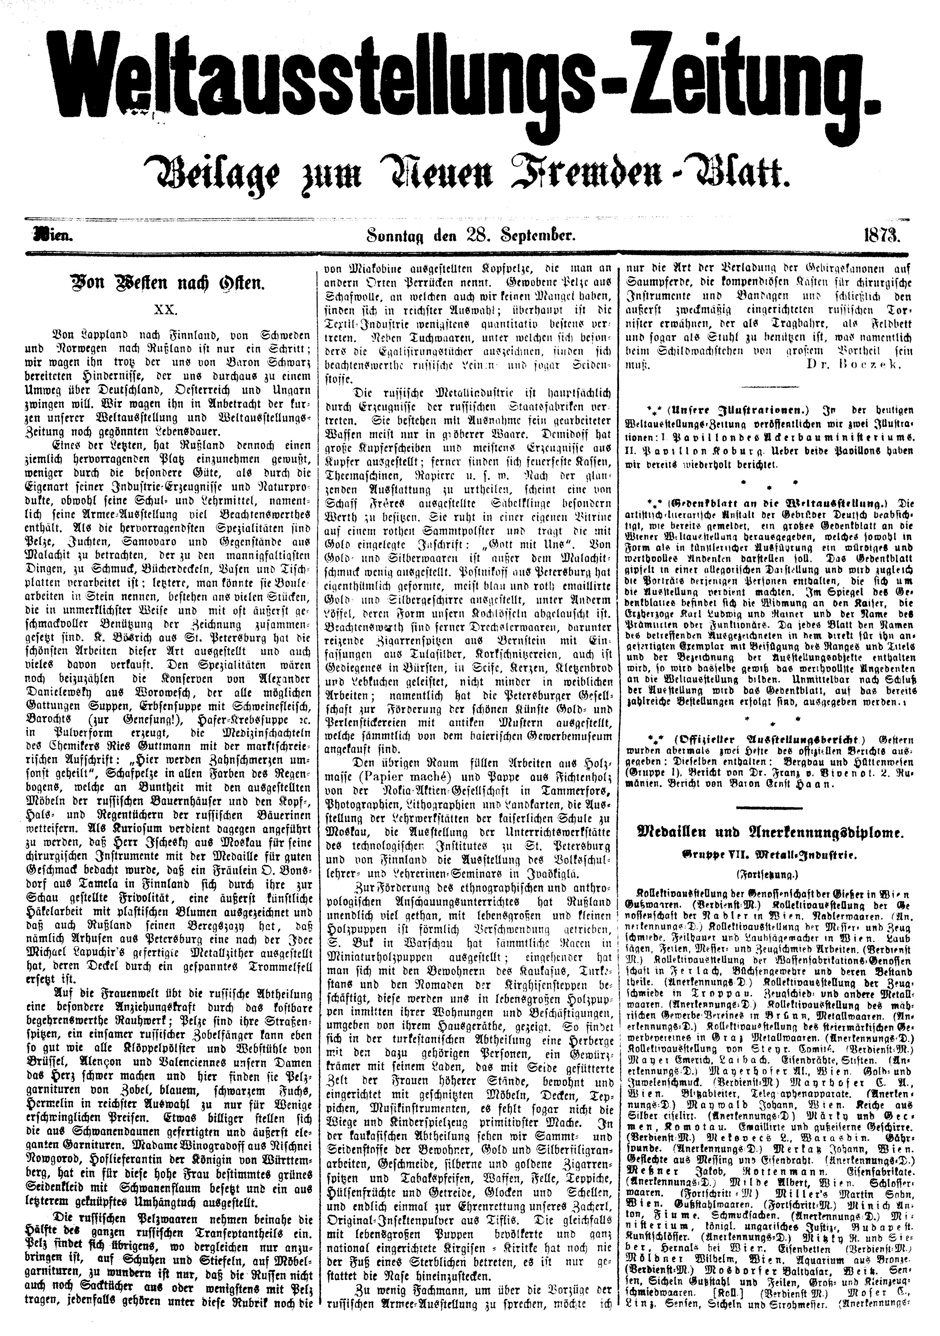 Archivbild: Neues Fremden-Blatt vom 28.9.1873, Beilage